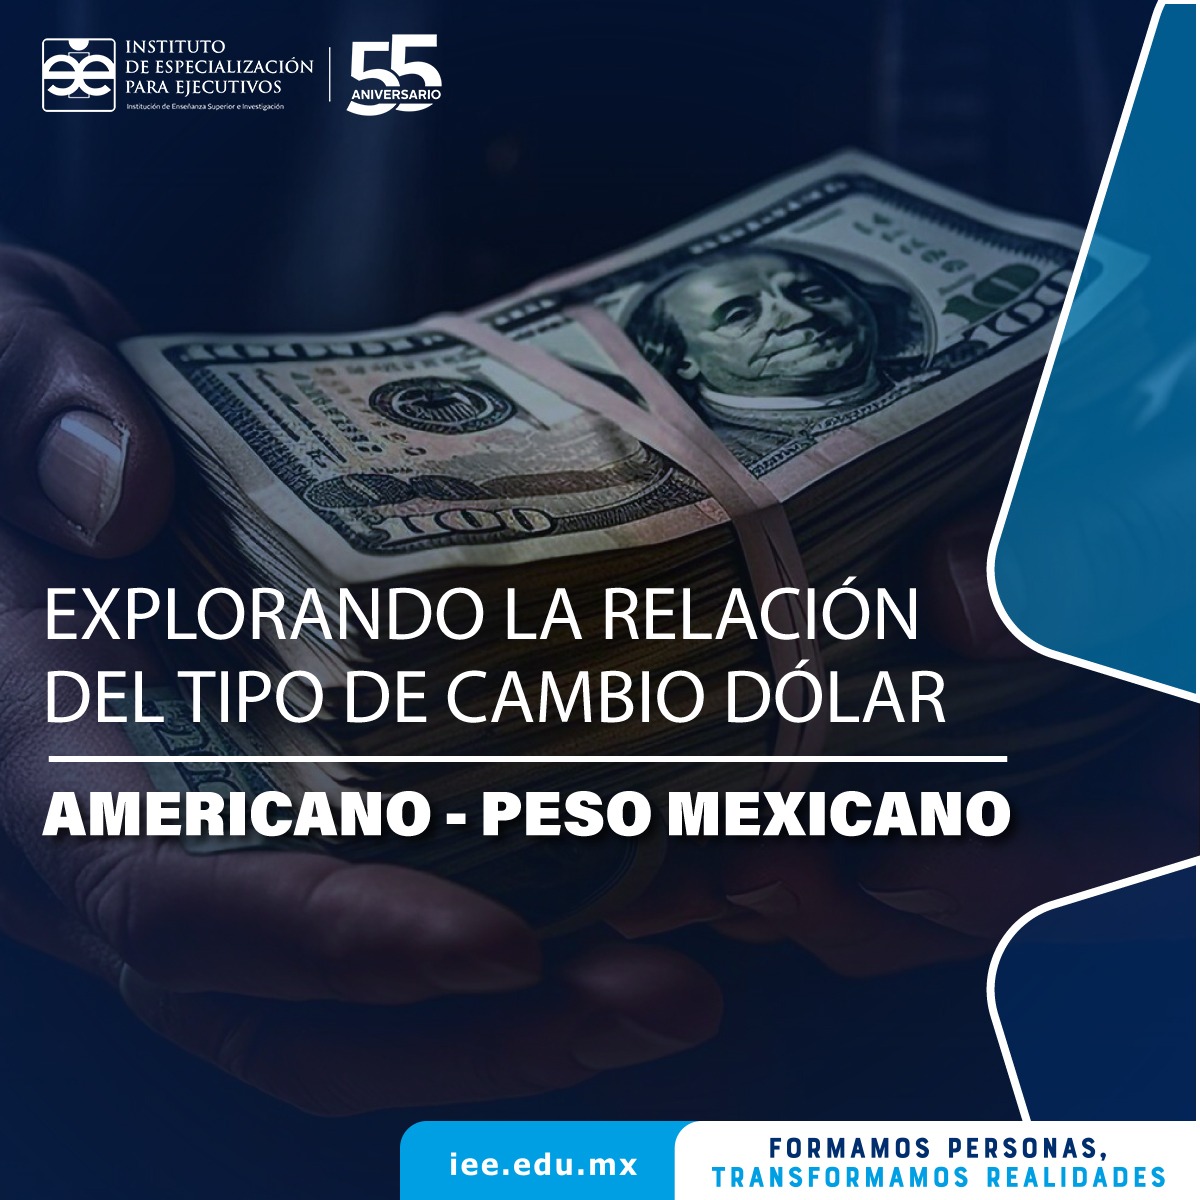 Explorando la relación del tipo de cambio dólar americano – peso mexicano